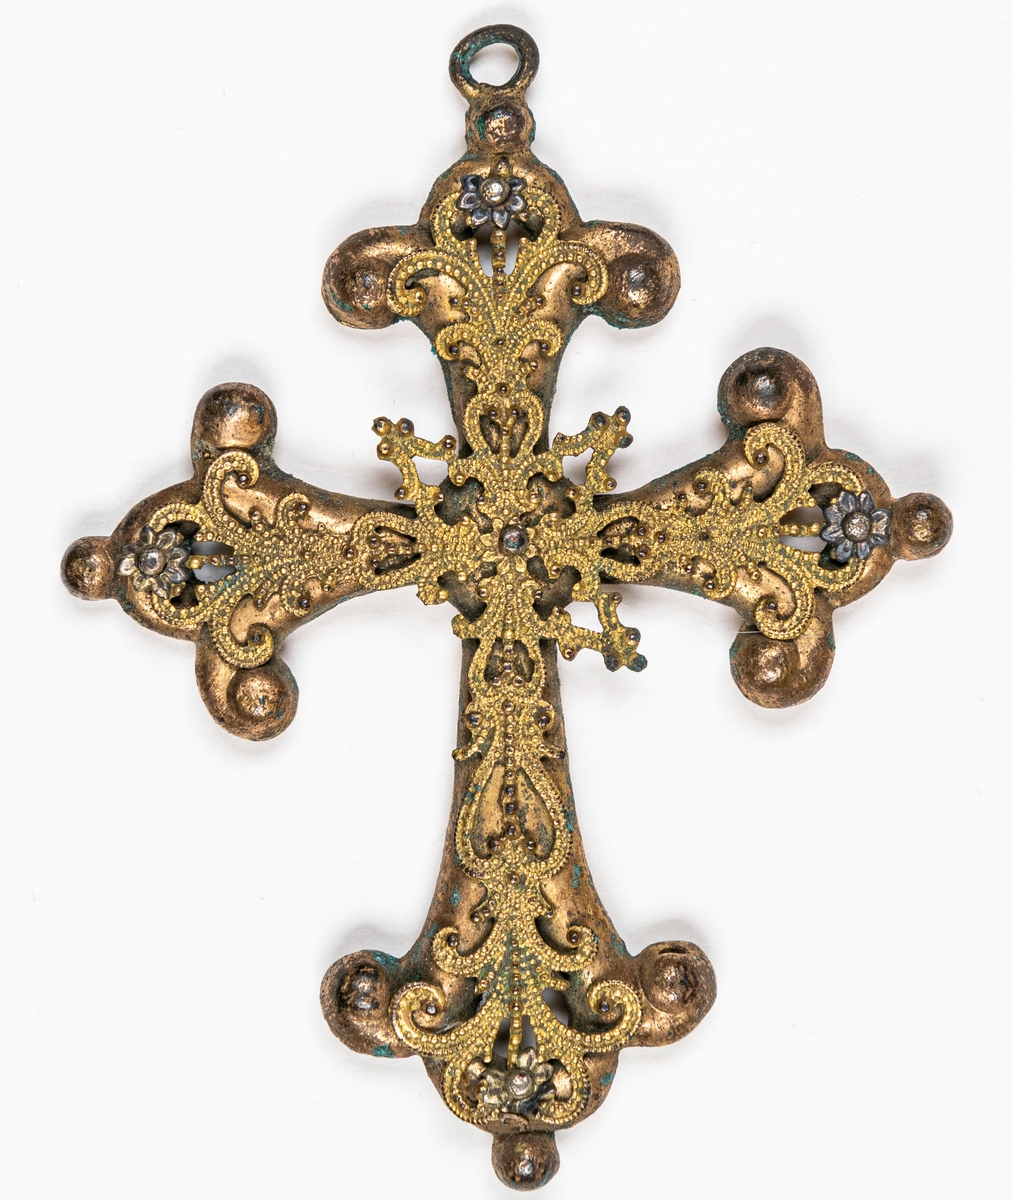 Kors av färgad metall med imiterande filigransarbete.